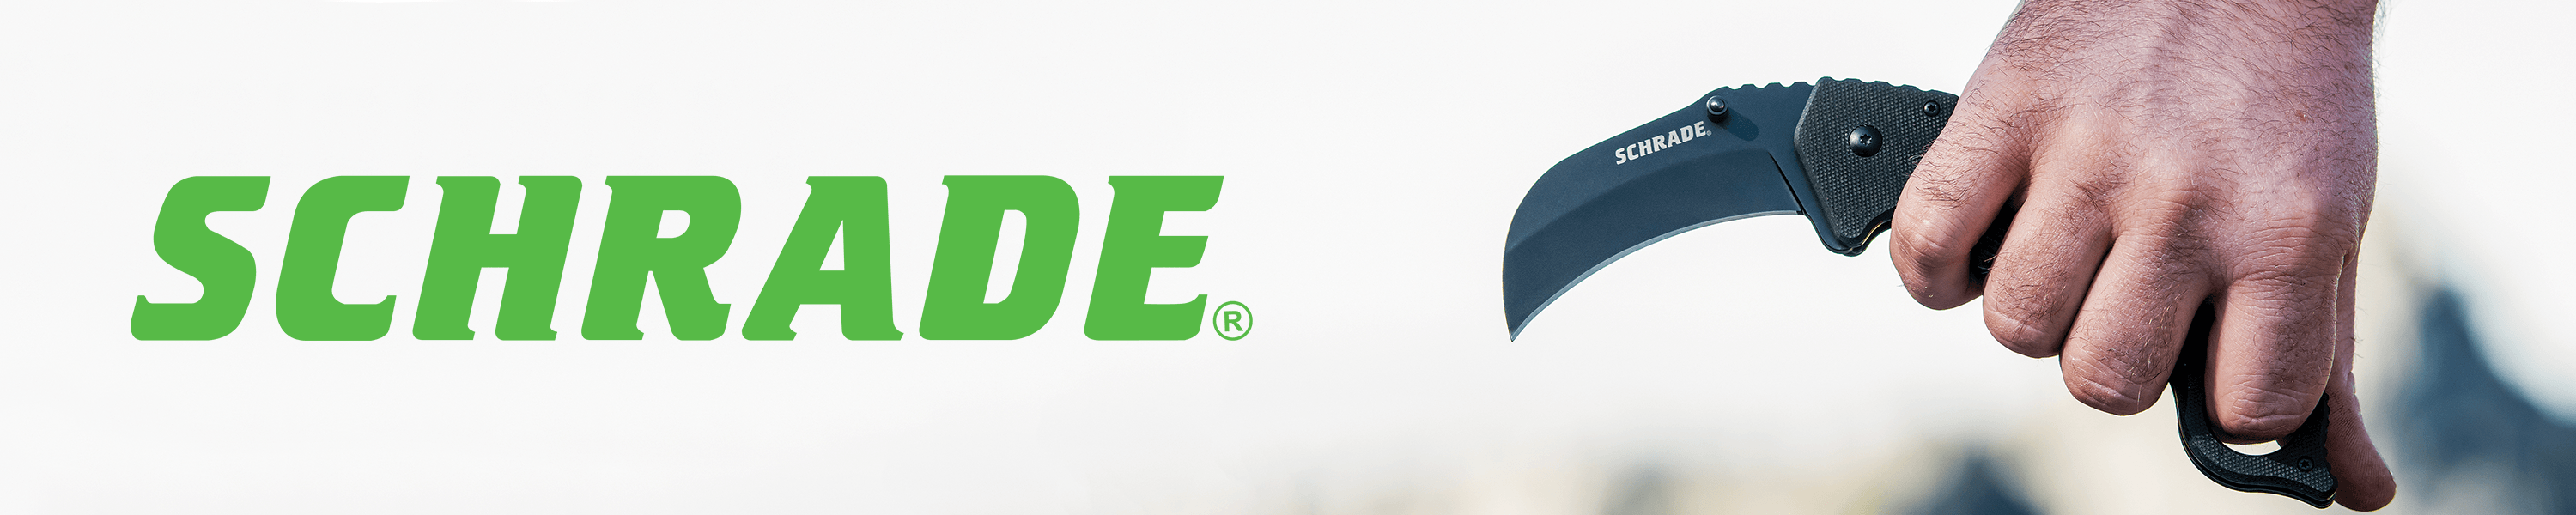 Schrade Logo - Amazon.com: Schrade